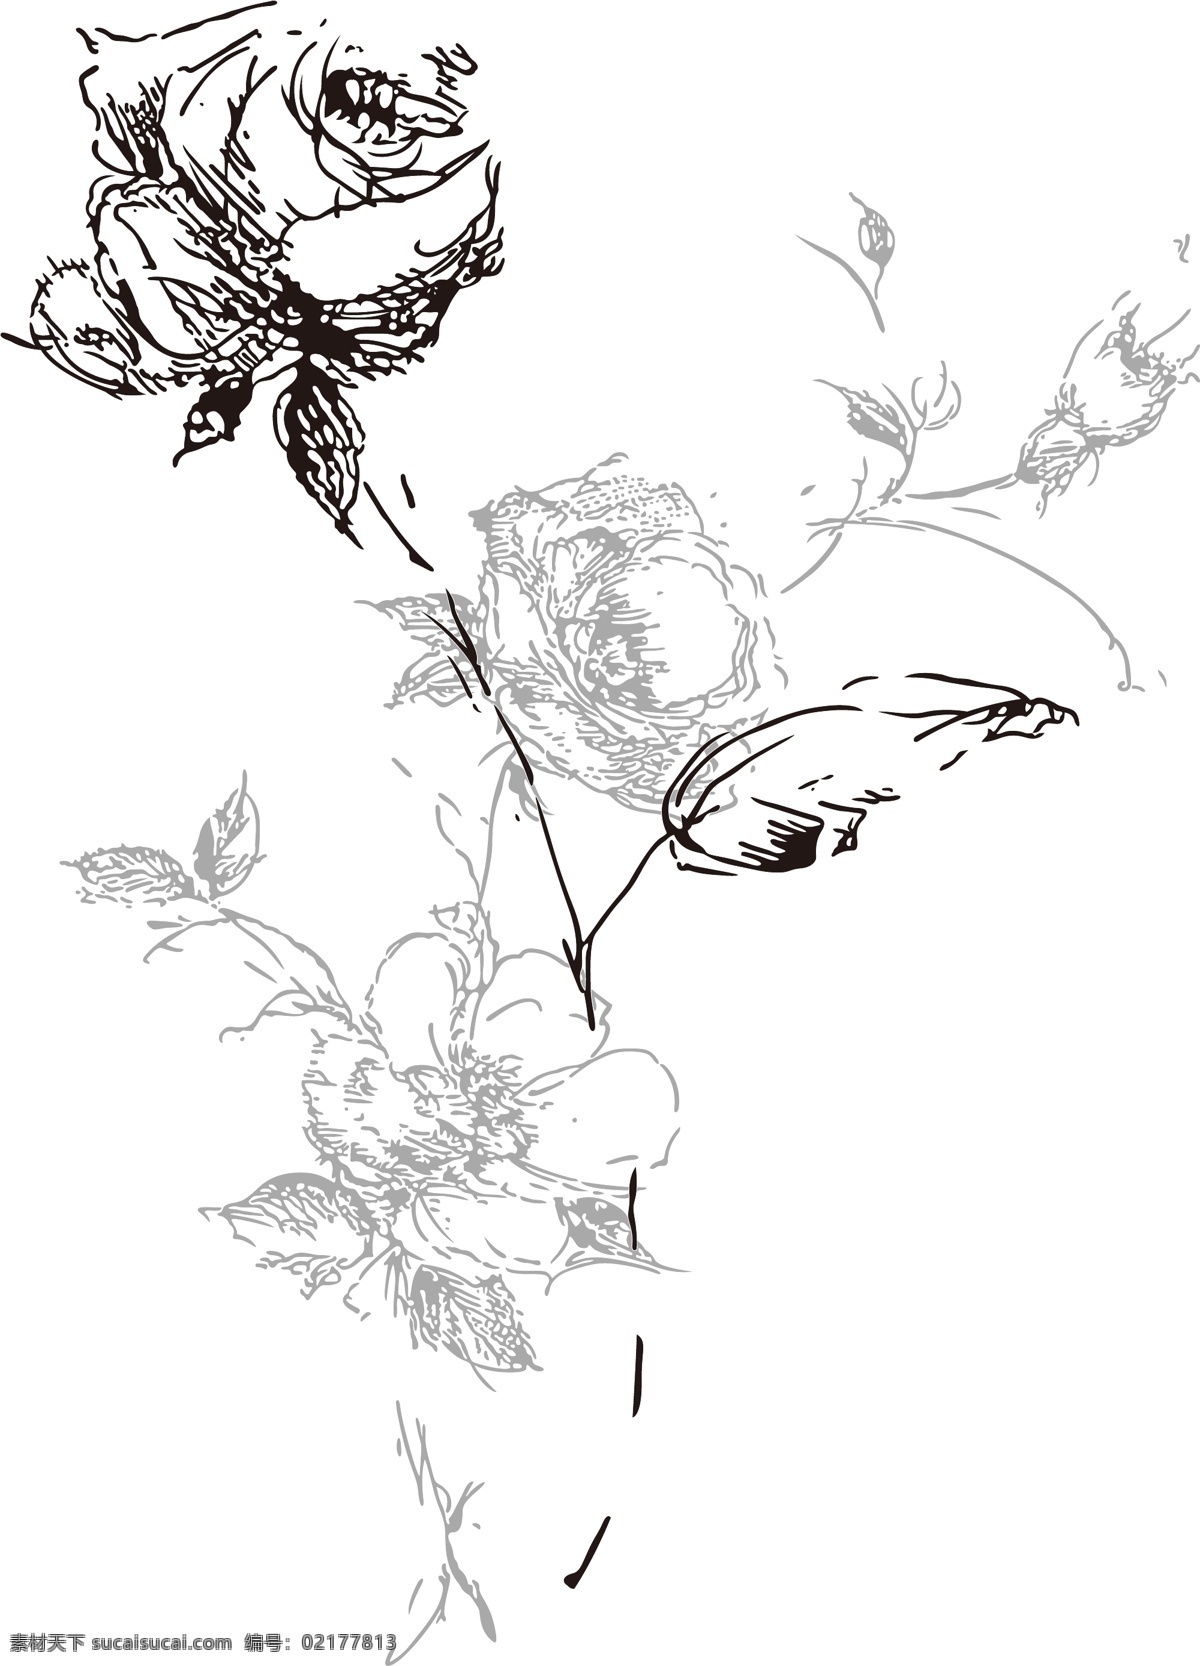 矢量玫瑰花 手绘花 花卉 植物花草 设计素材 印花素材 纺织印花 花纸设计 矢量花朵 抽象花型 花纹边框 文化艺术 绘画书法